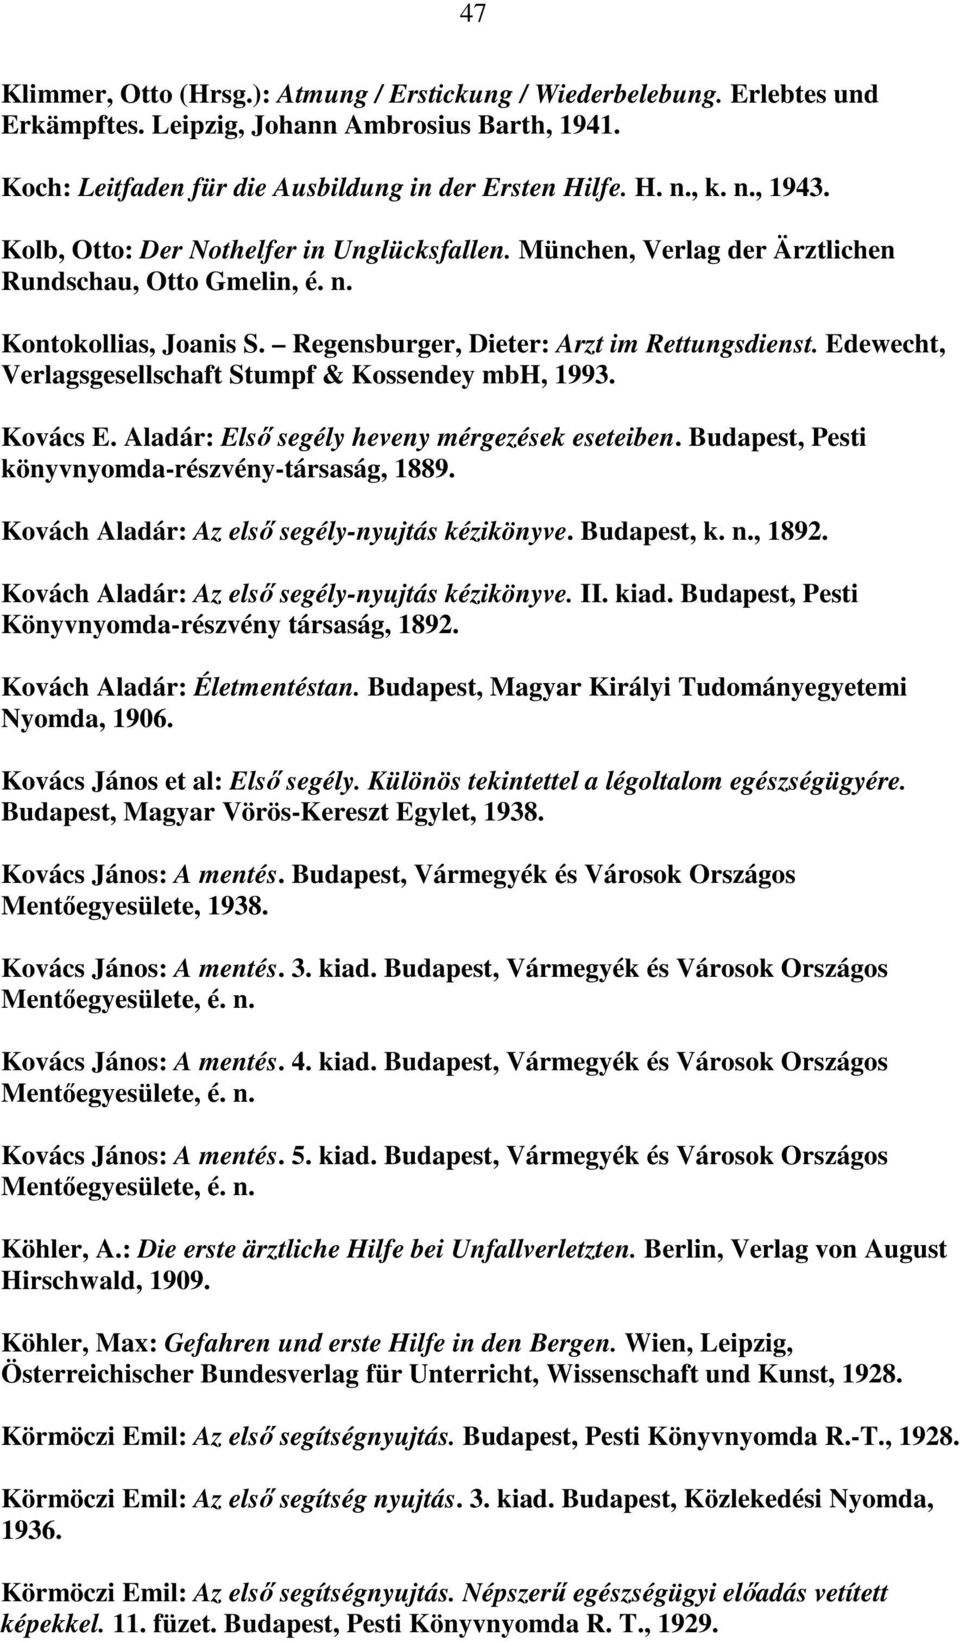 Edewecht, Verlagsgesellschaft Stumpf & Kossendey mbh, 1993. Kovács E. Aladár: Első segély heveny mérgezések eseteiben. Budapest, Pesti könyvnyomda-részvény-társaság, 1889.